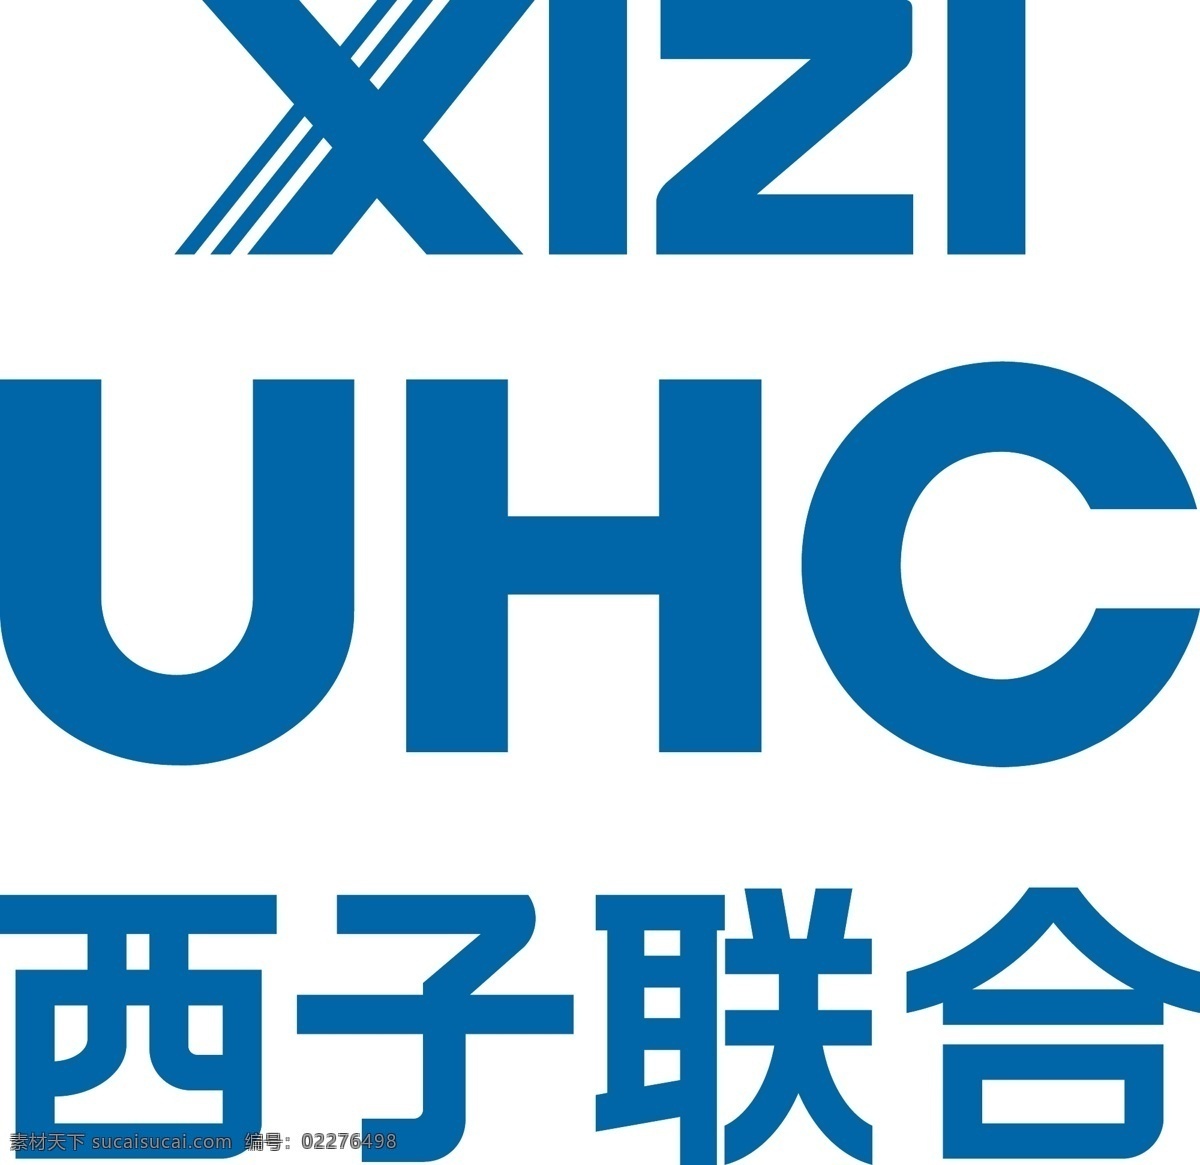 西子联合标志 竖 杭州酒店标志 企业 logo 标志 标识标志图标 矢量